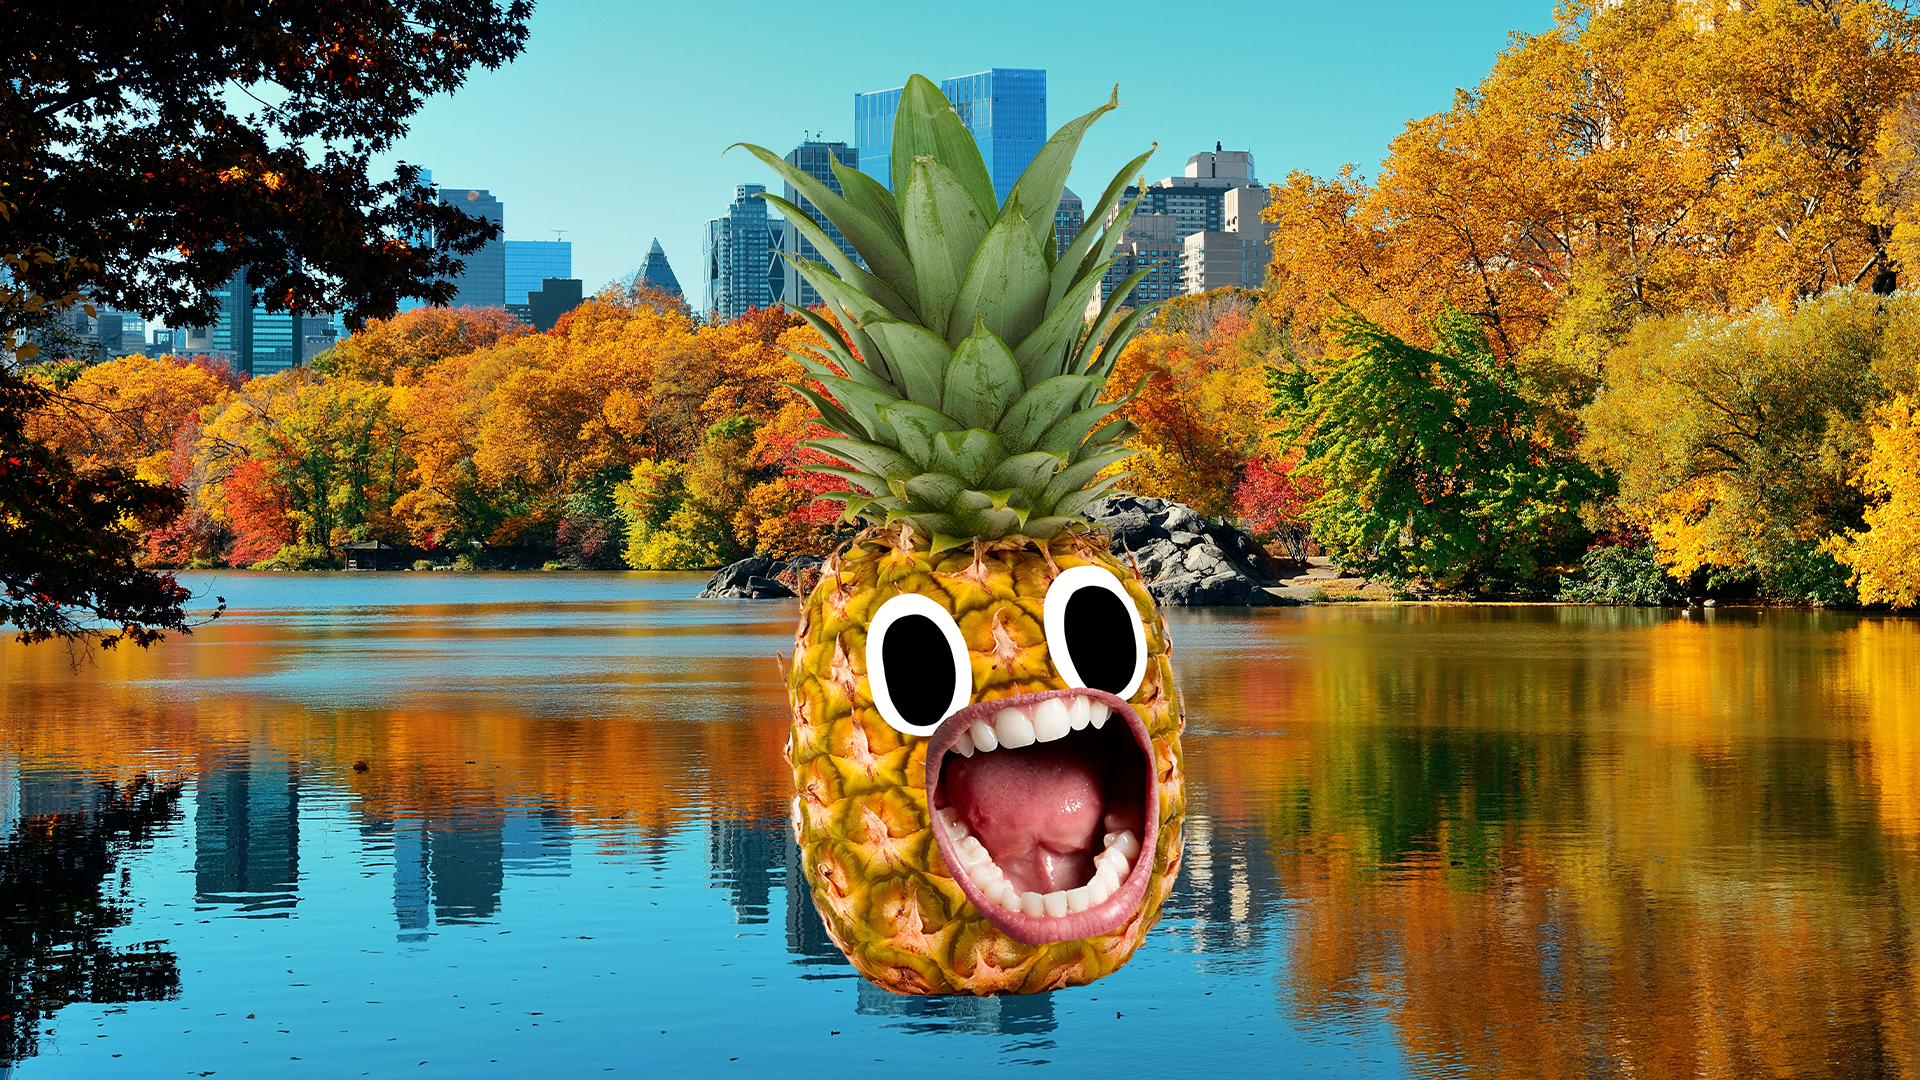 Screaming pineapple enjoying Central Park